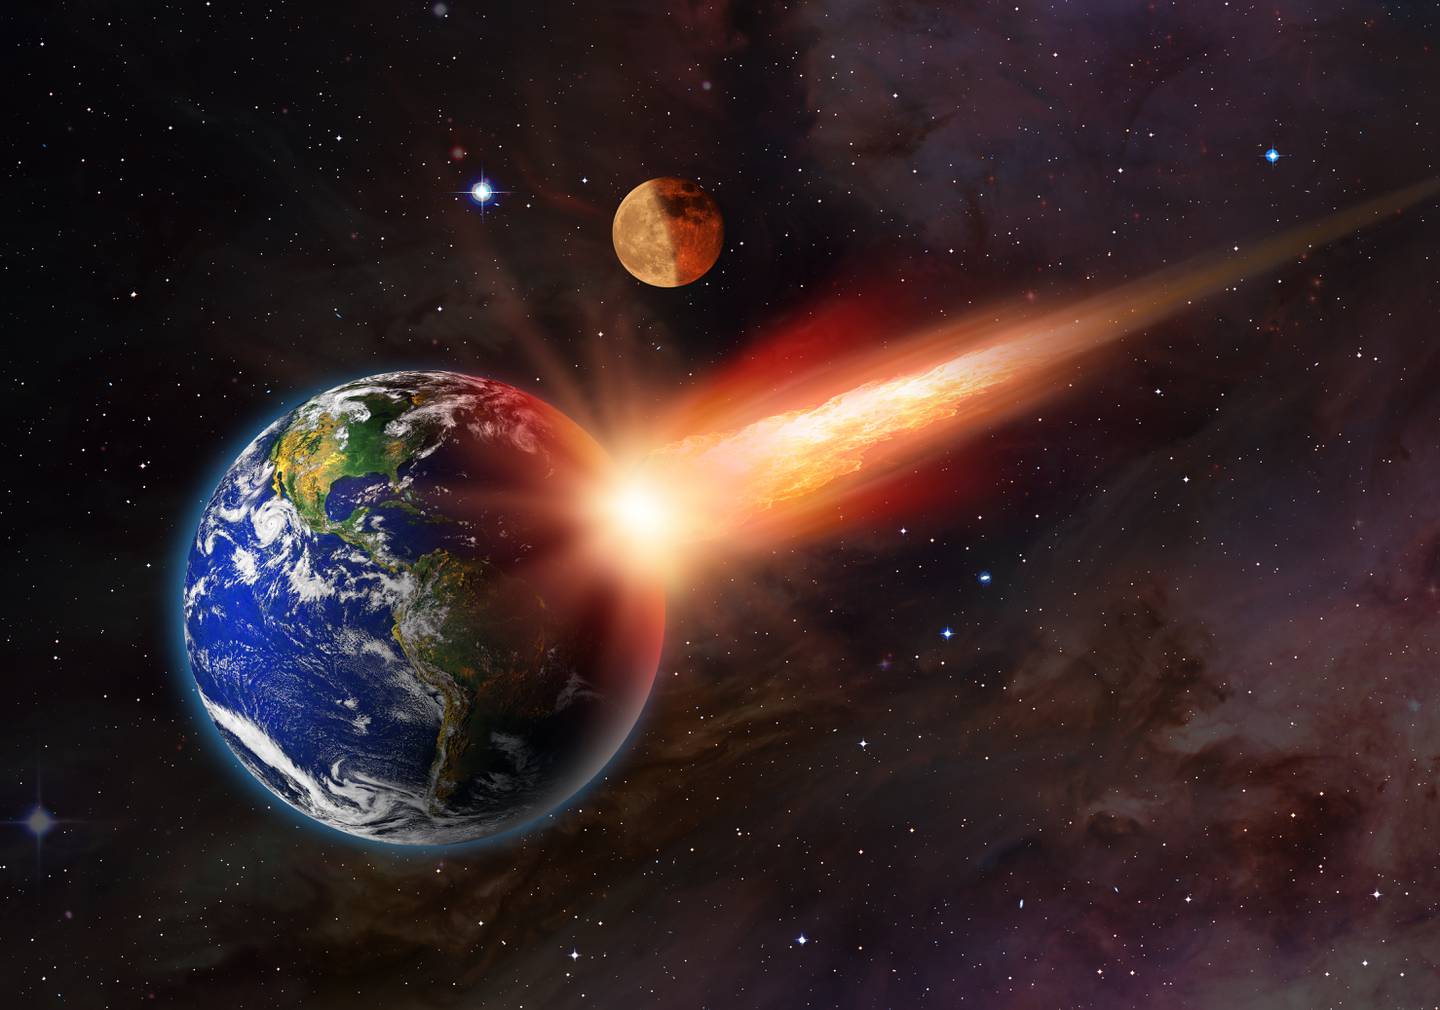 están asegurando que como para el próximo 21 de abril desde la Tierra se podrá ver el “cometa diablo”, eso significa el fin de los tiempos y que nuestra humanidad llegará hasta ese 21 de abril.